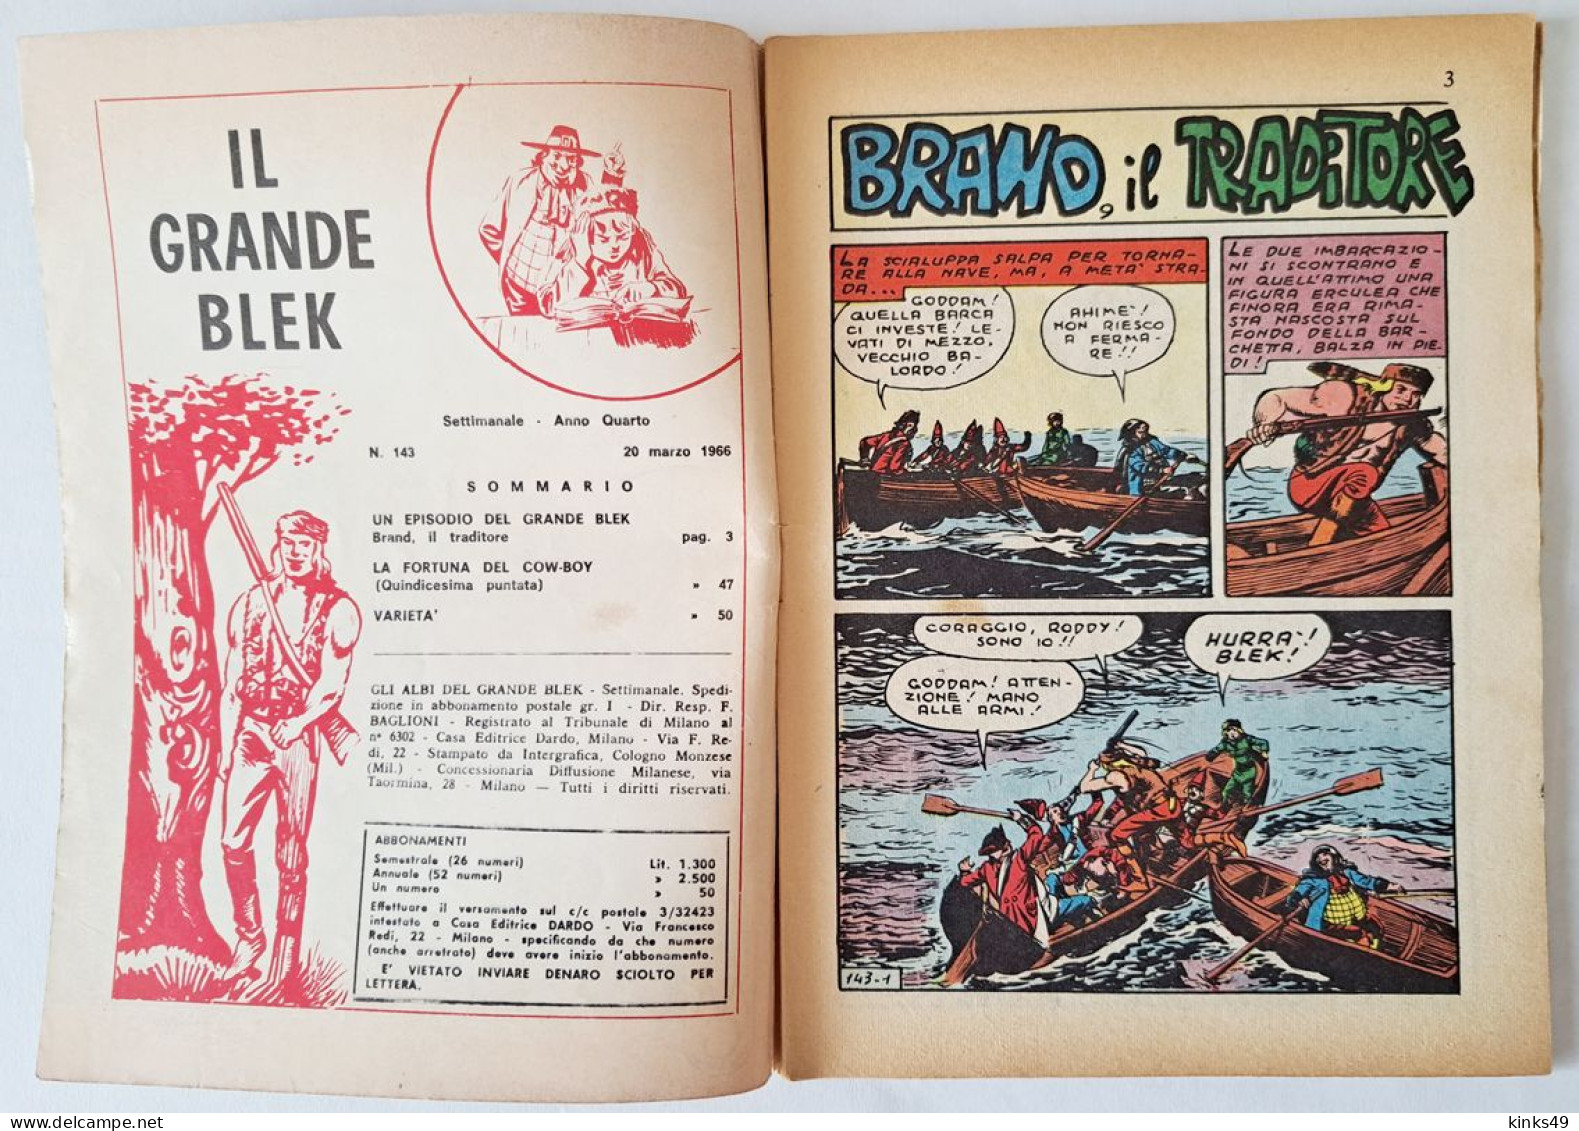 M446> GLI ALBI DEL GRANDE BLEK = N° 143 Del 20 MAR. 1966 < Brand Il Traditore > - Premières éditions